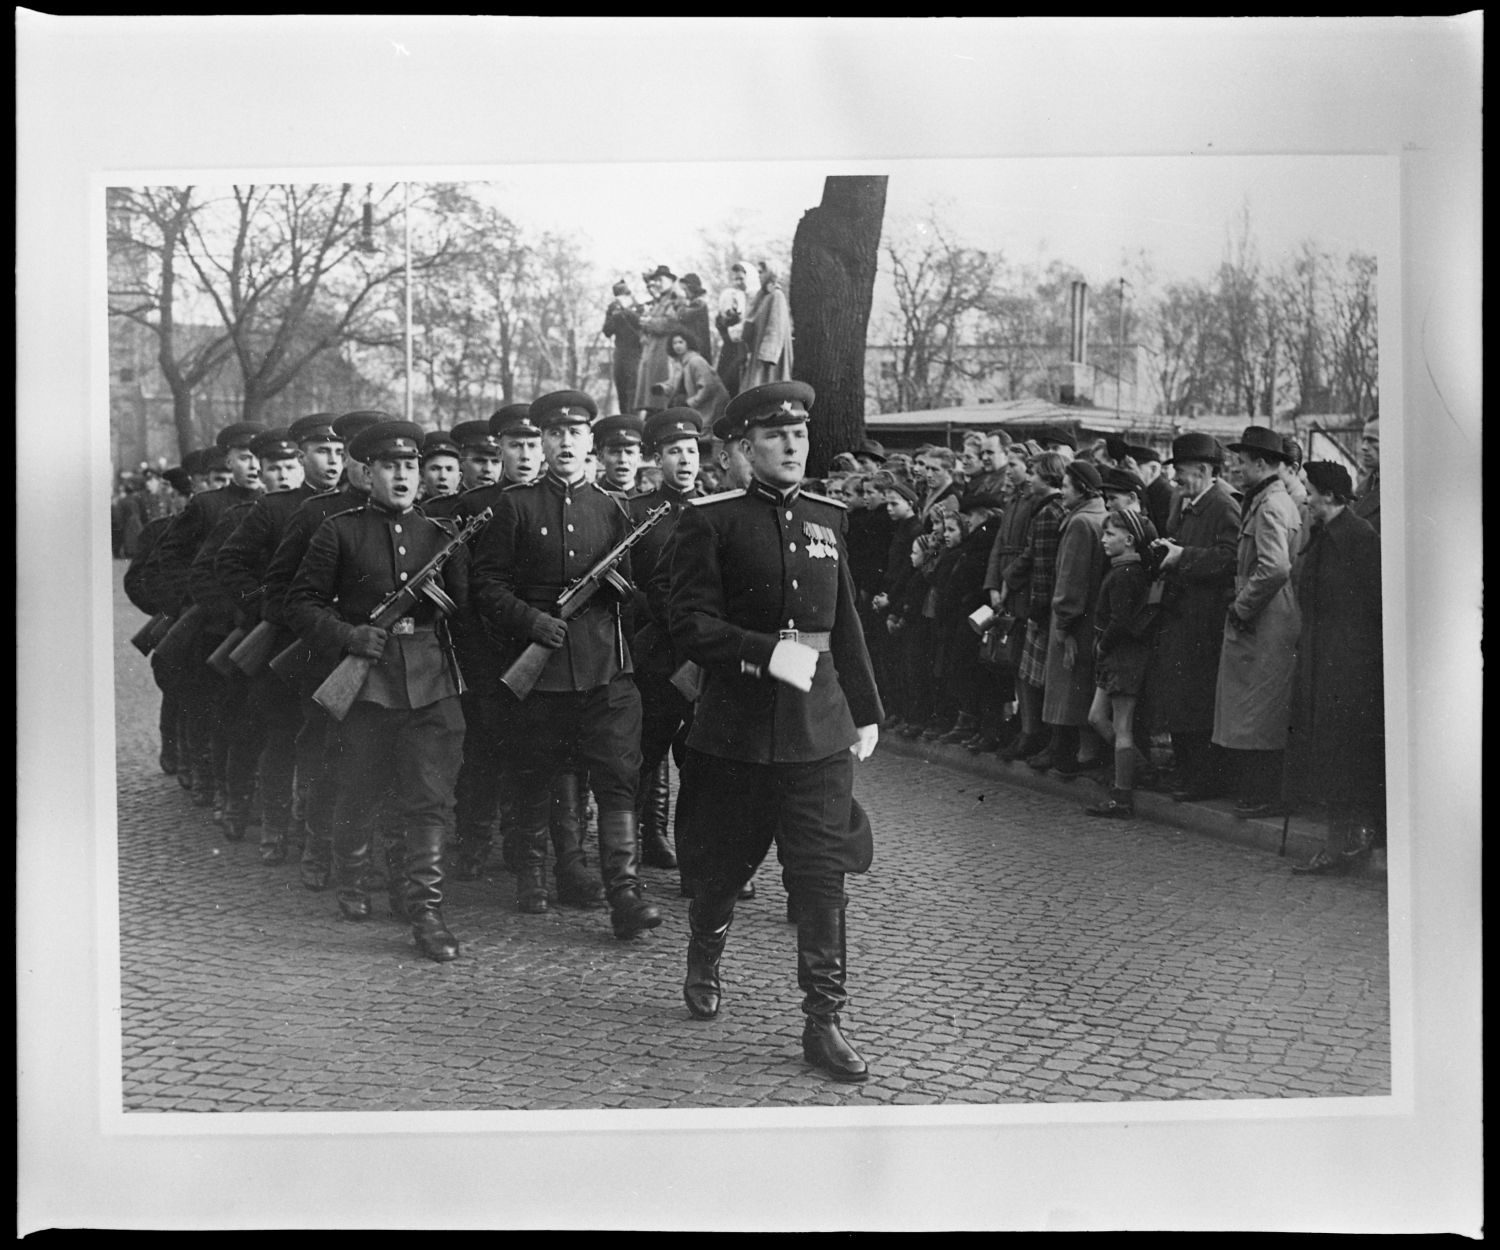 s/w-Fotografie: Wachablösung vor dem Alliierten Kriegsverbrechergefängnis Berlin-Spandau (AlliiertenMuseum/U.S. Army Photograph Public Domain Mark)